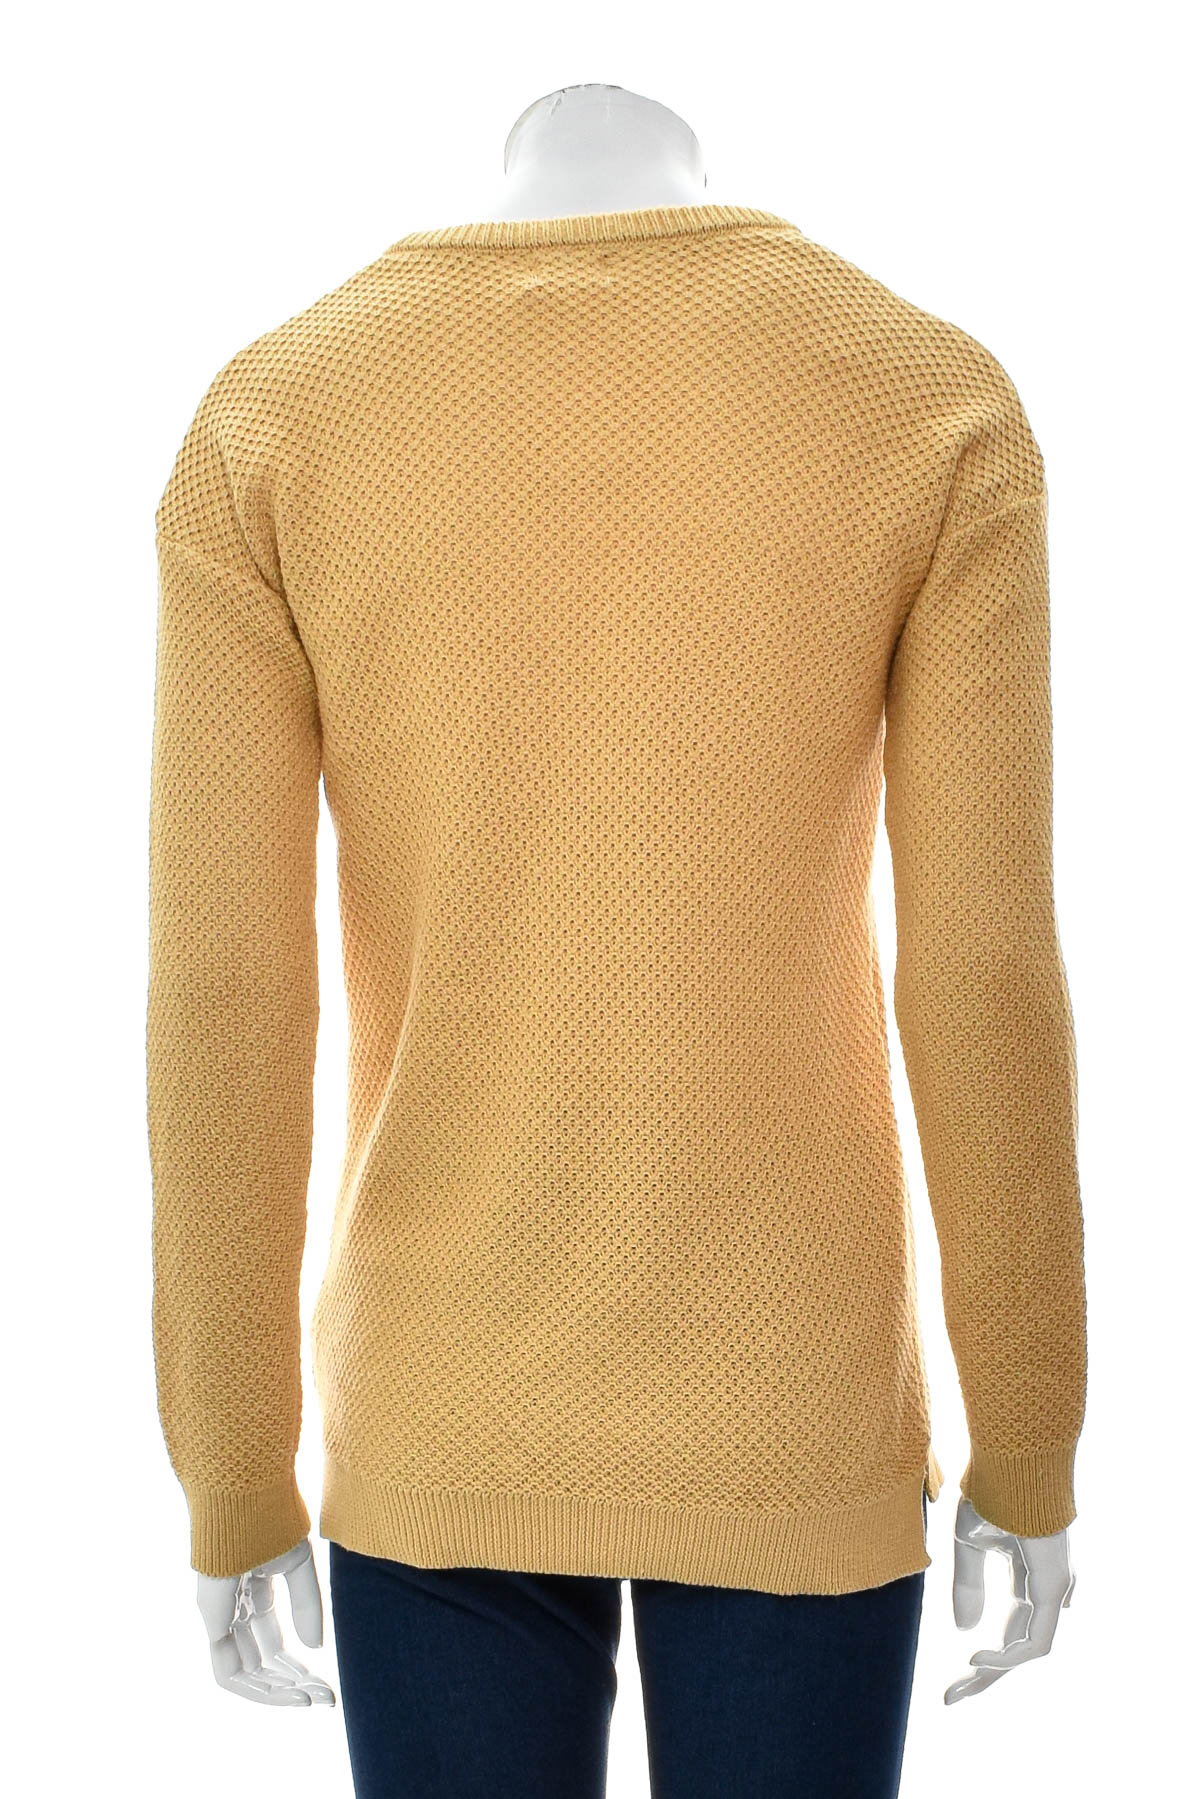 Women's sweater - COTTON:ON - 1